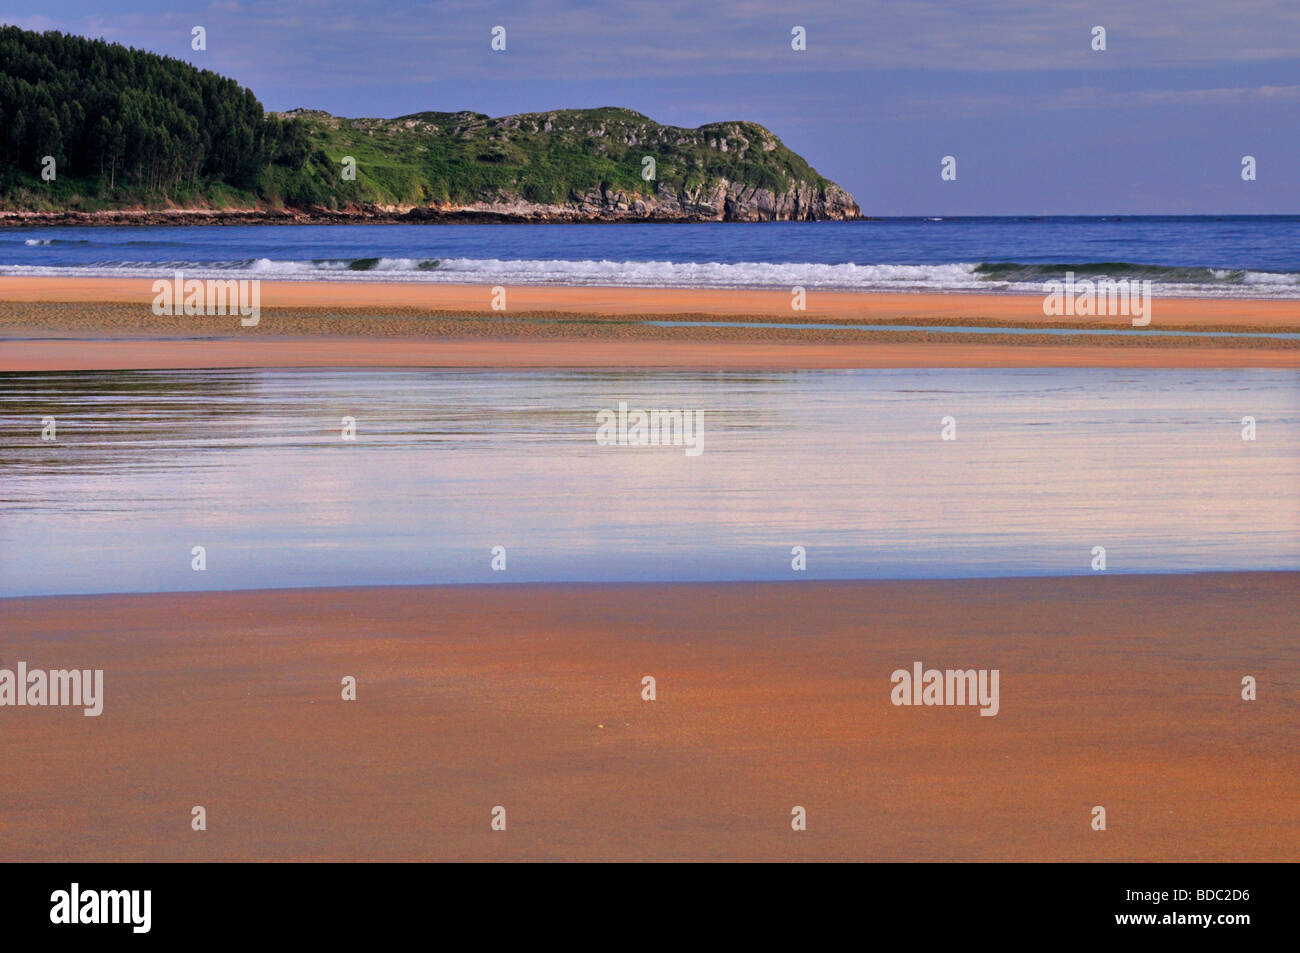 Spain, Cantabria: Beach Playa de Oyambre Stock Photo